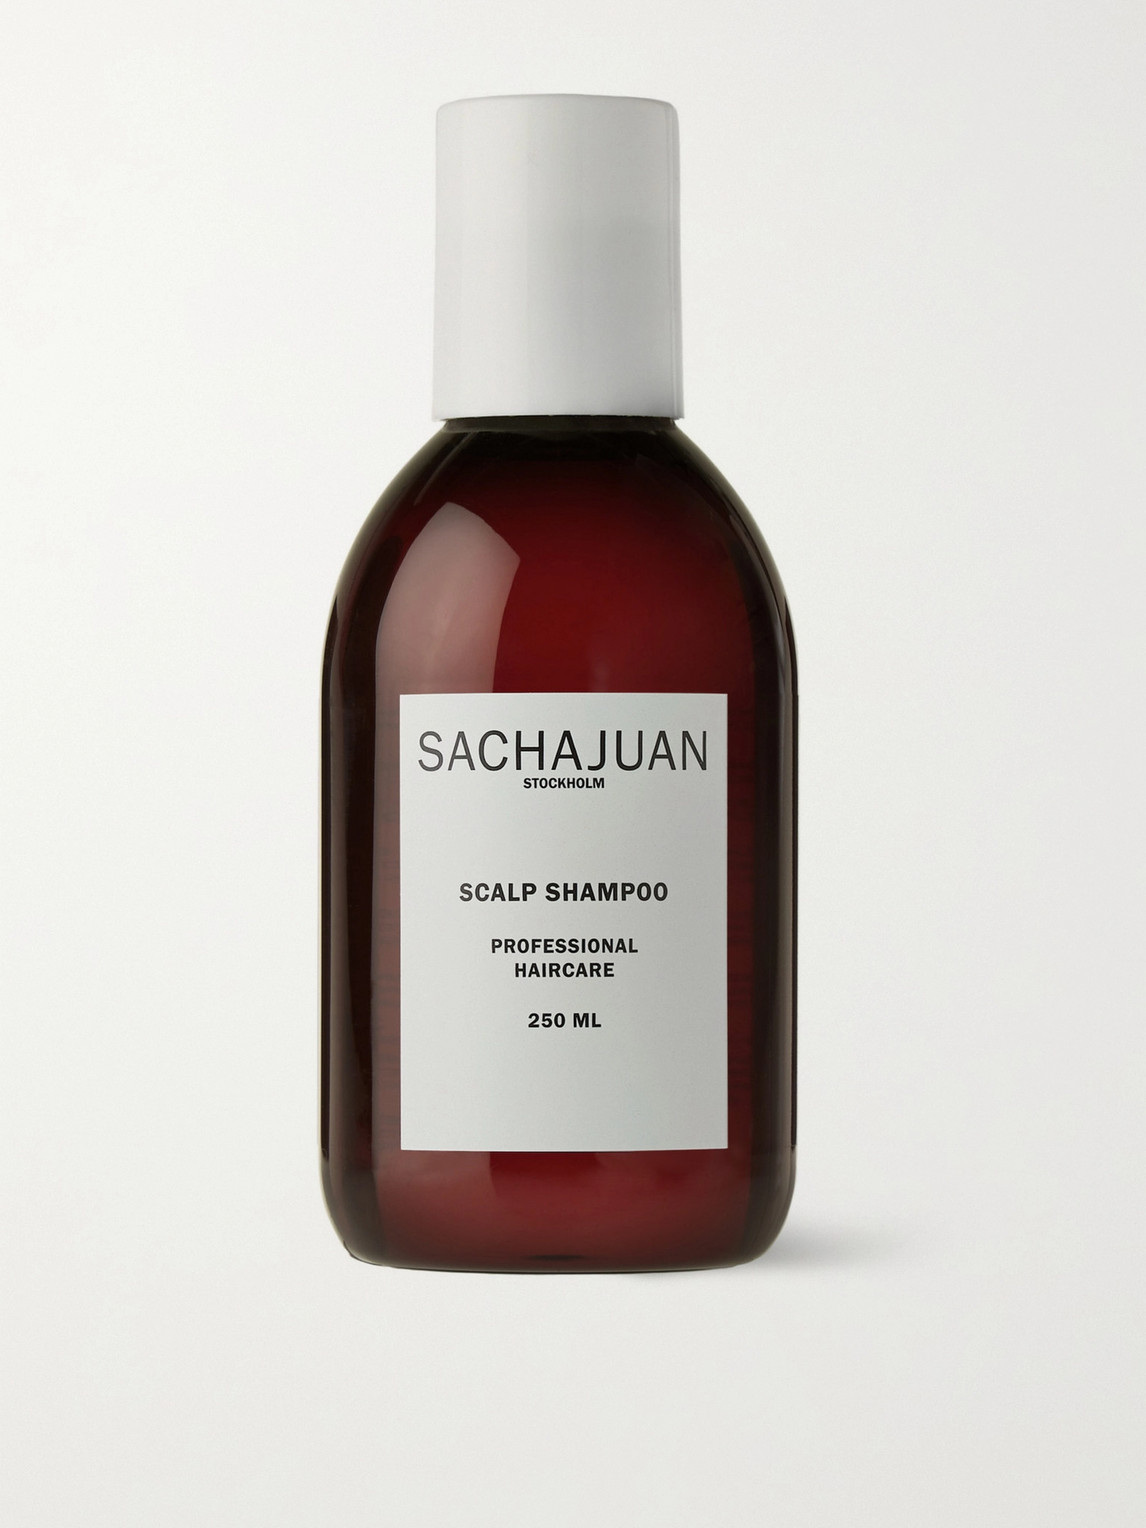 Sachajuan Sachajuan - Scalp Shampoo 250ml/8.4oz In N/a